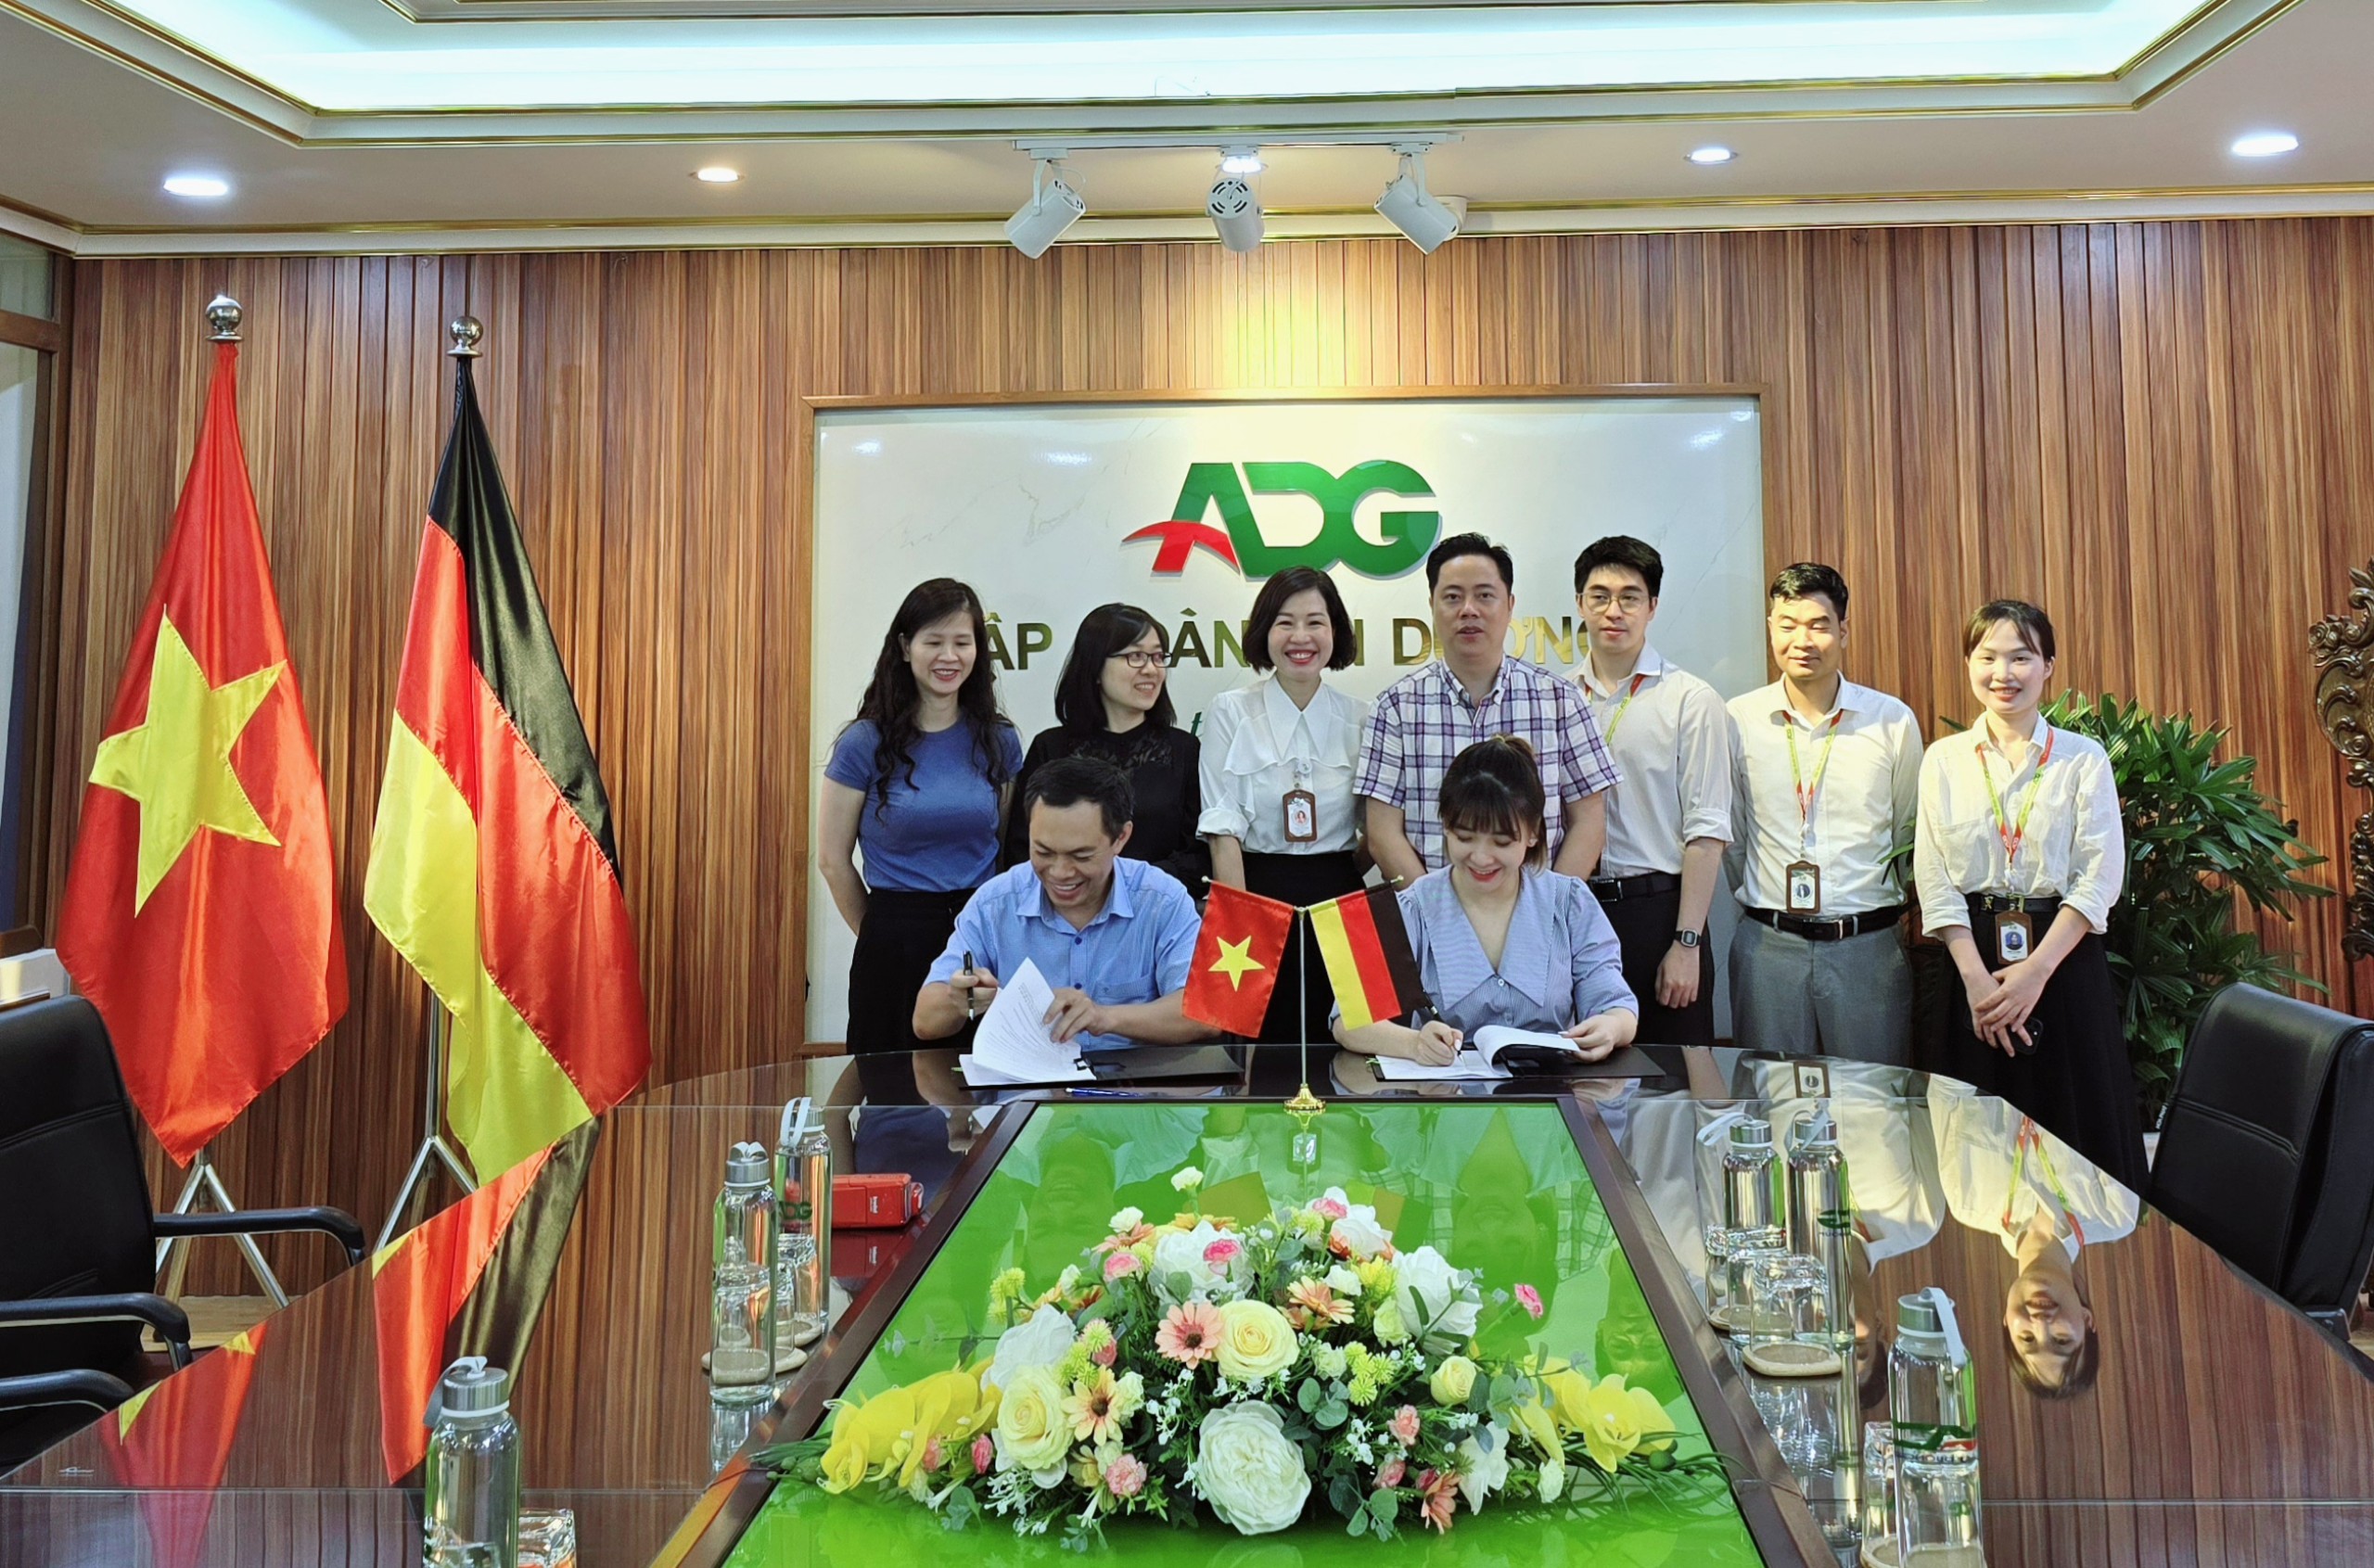  Bà Hoàng Thị Vân Anh - Giám đốc Trung tâm CHLB Đức An Dương Group và đại diện Công ty G7 Holding cùng ký thoả thuận hợp tác